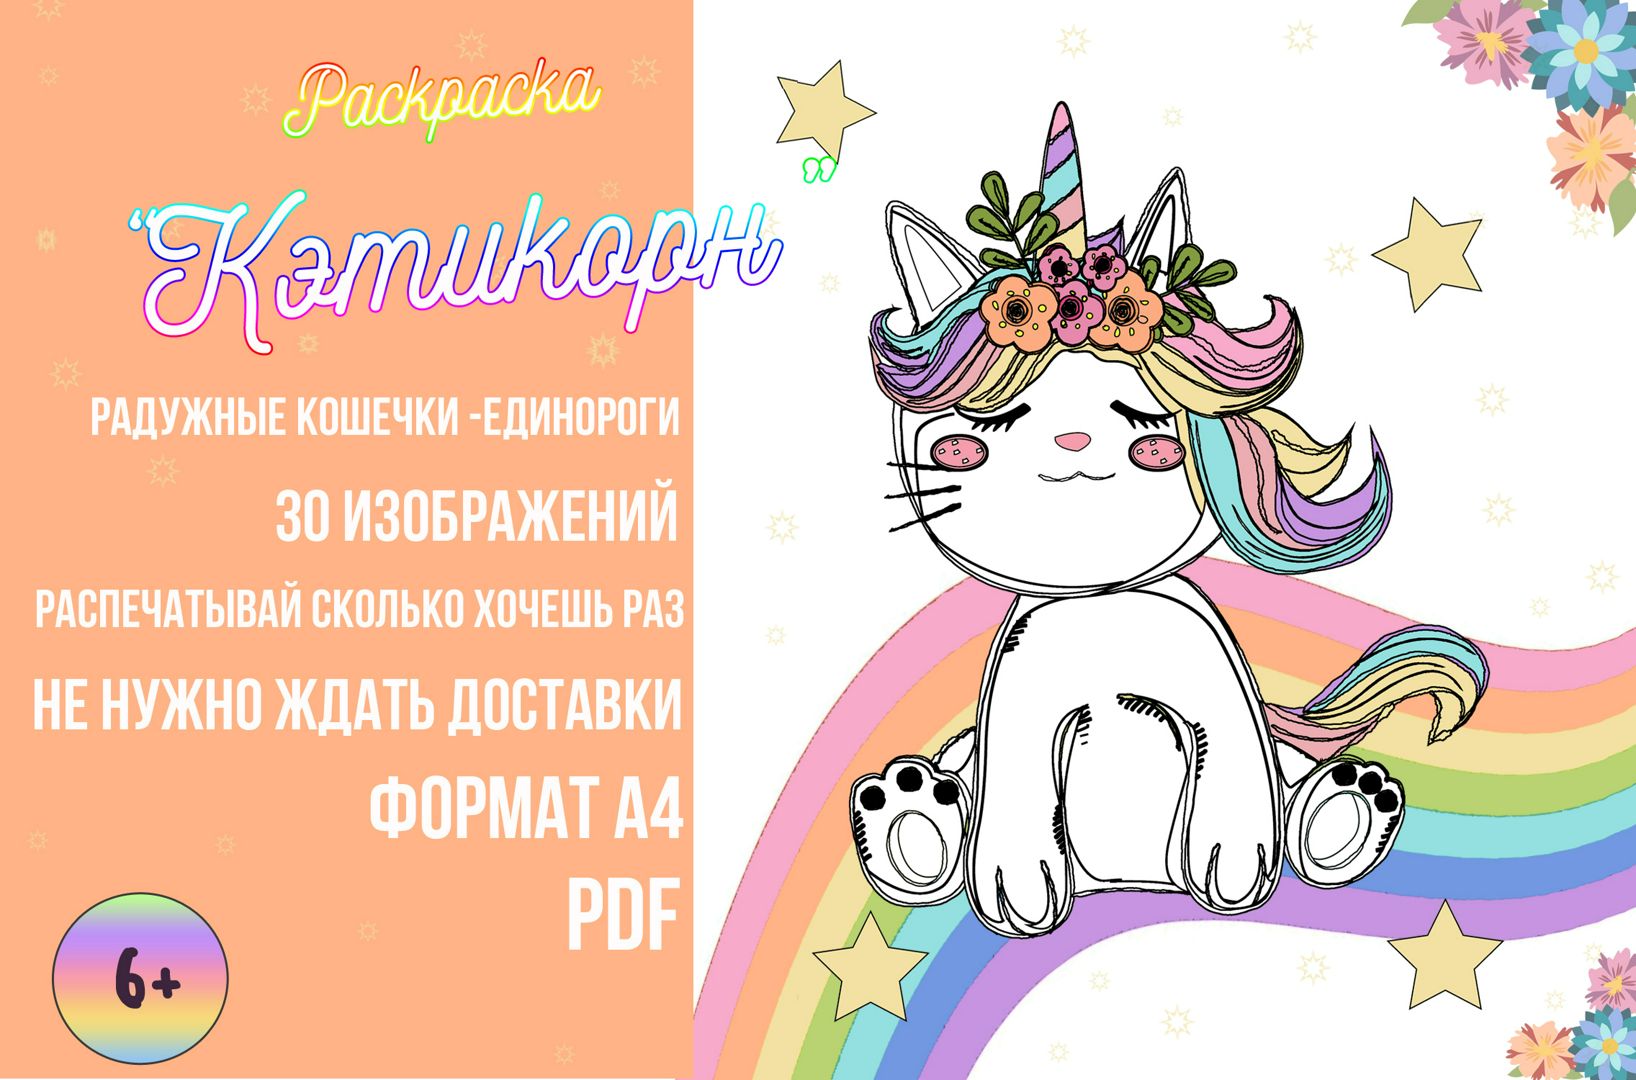 Раскраска "Кэтикорн"/раскраска для детей радужная кошка - единорог/кошка - единорог распечатать